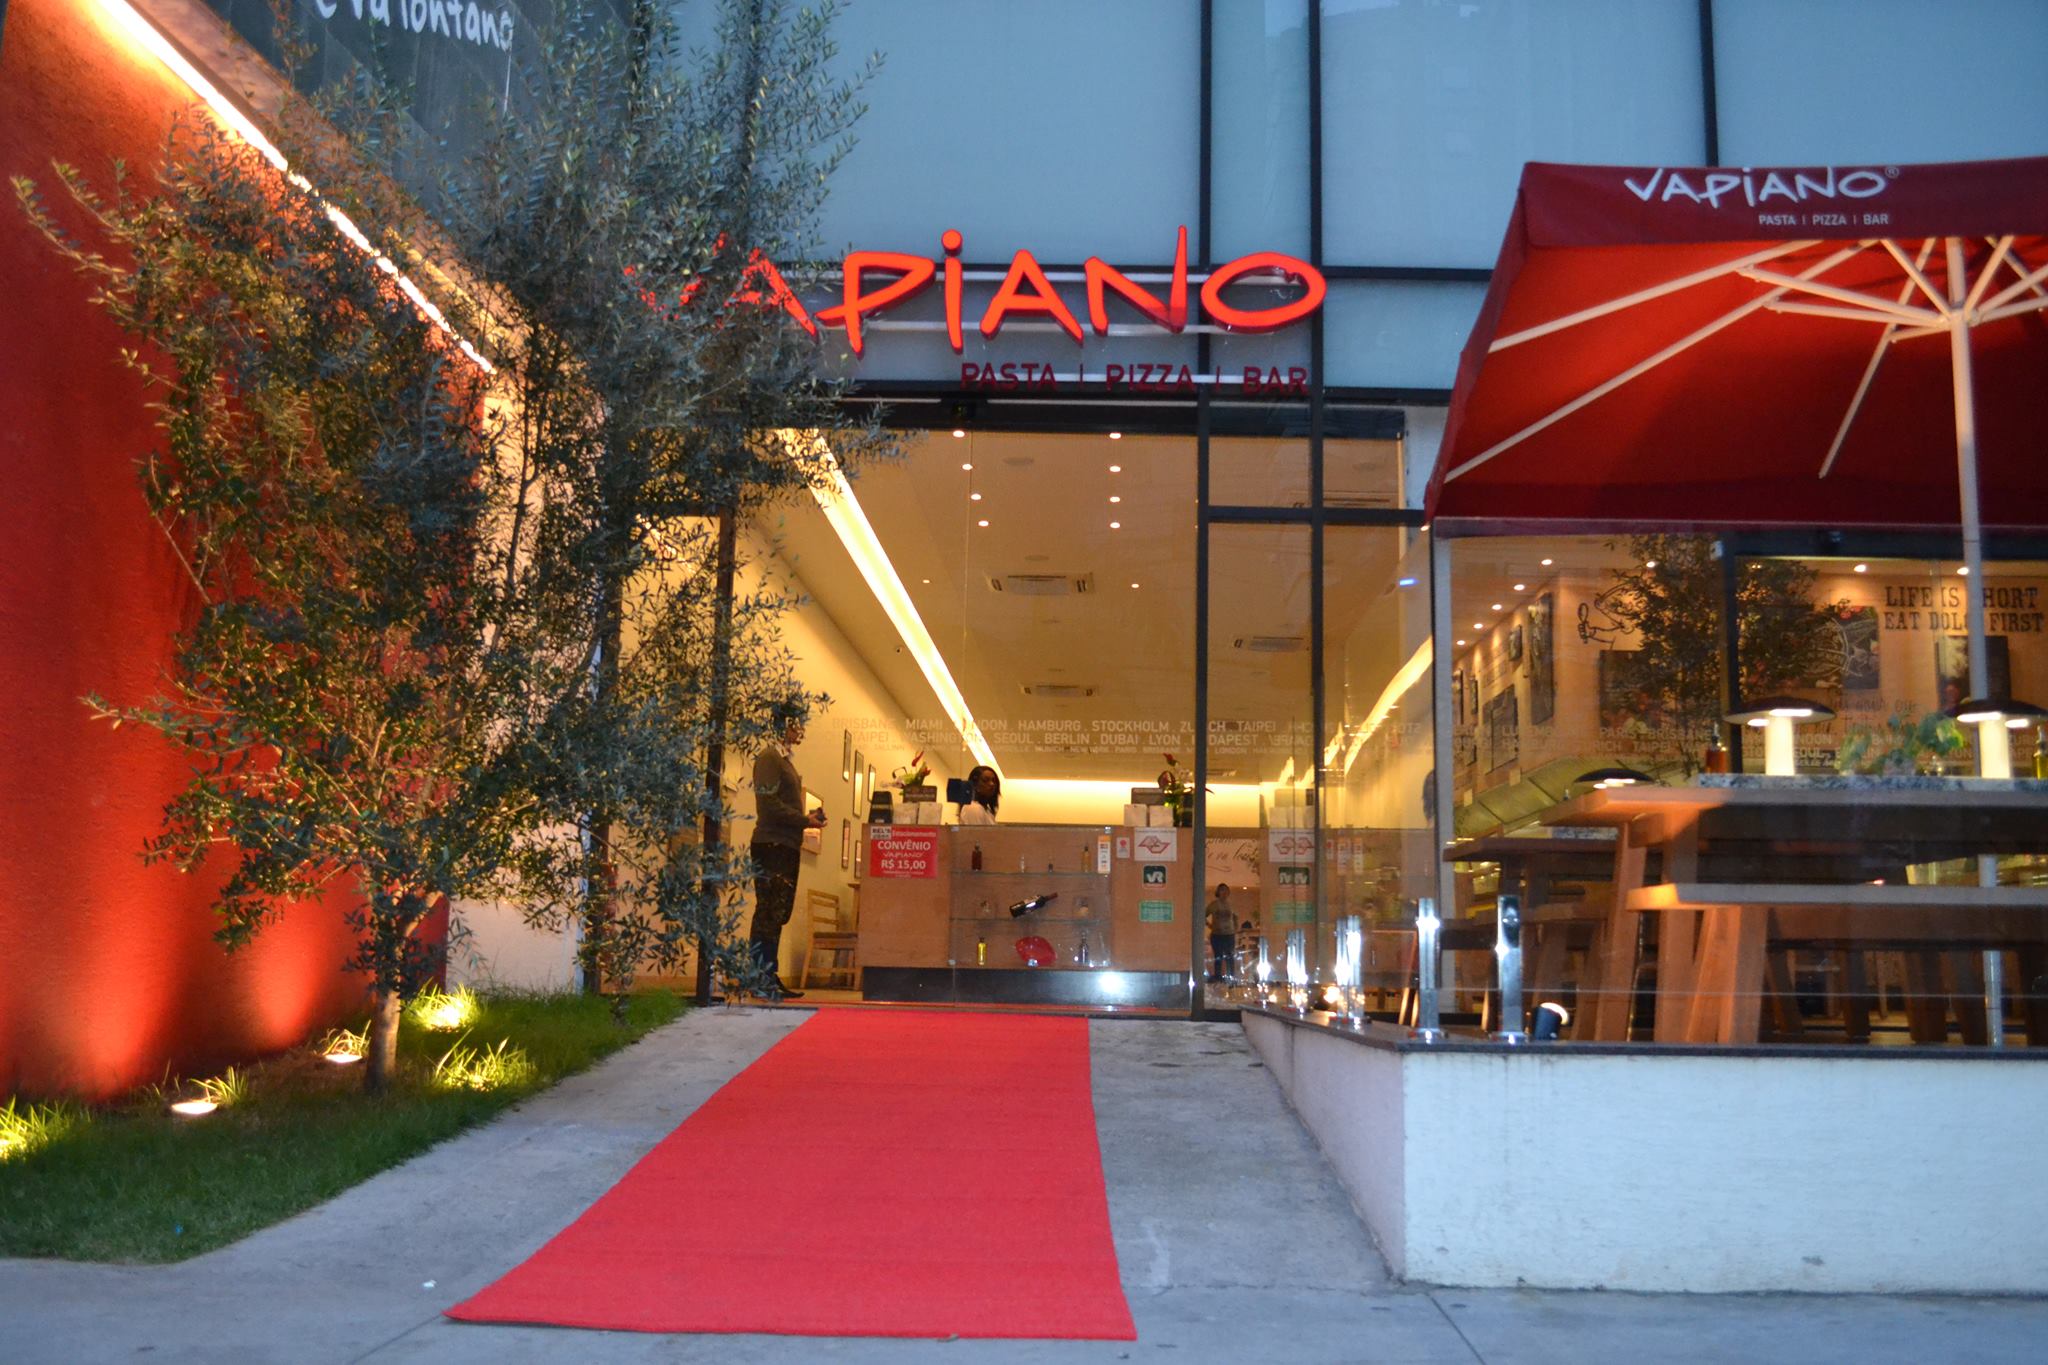 Restaurantes: Vapiano